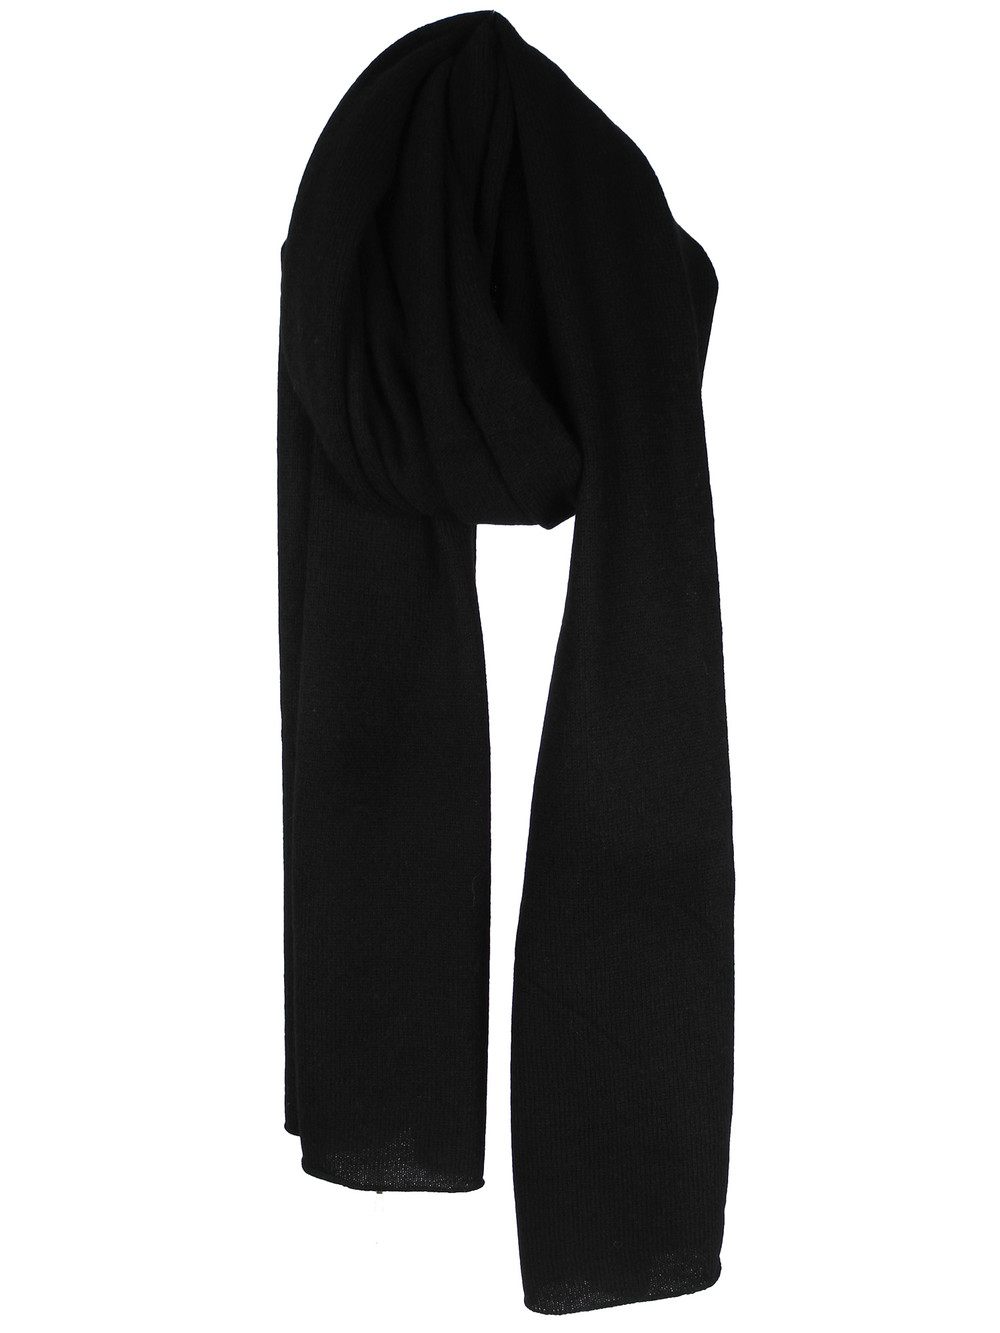 C.O.S.Y by SjaalMania Sjaal Cosy 100% Cashmere Solid Black